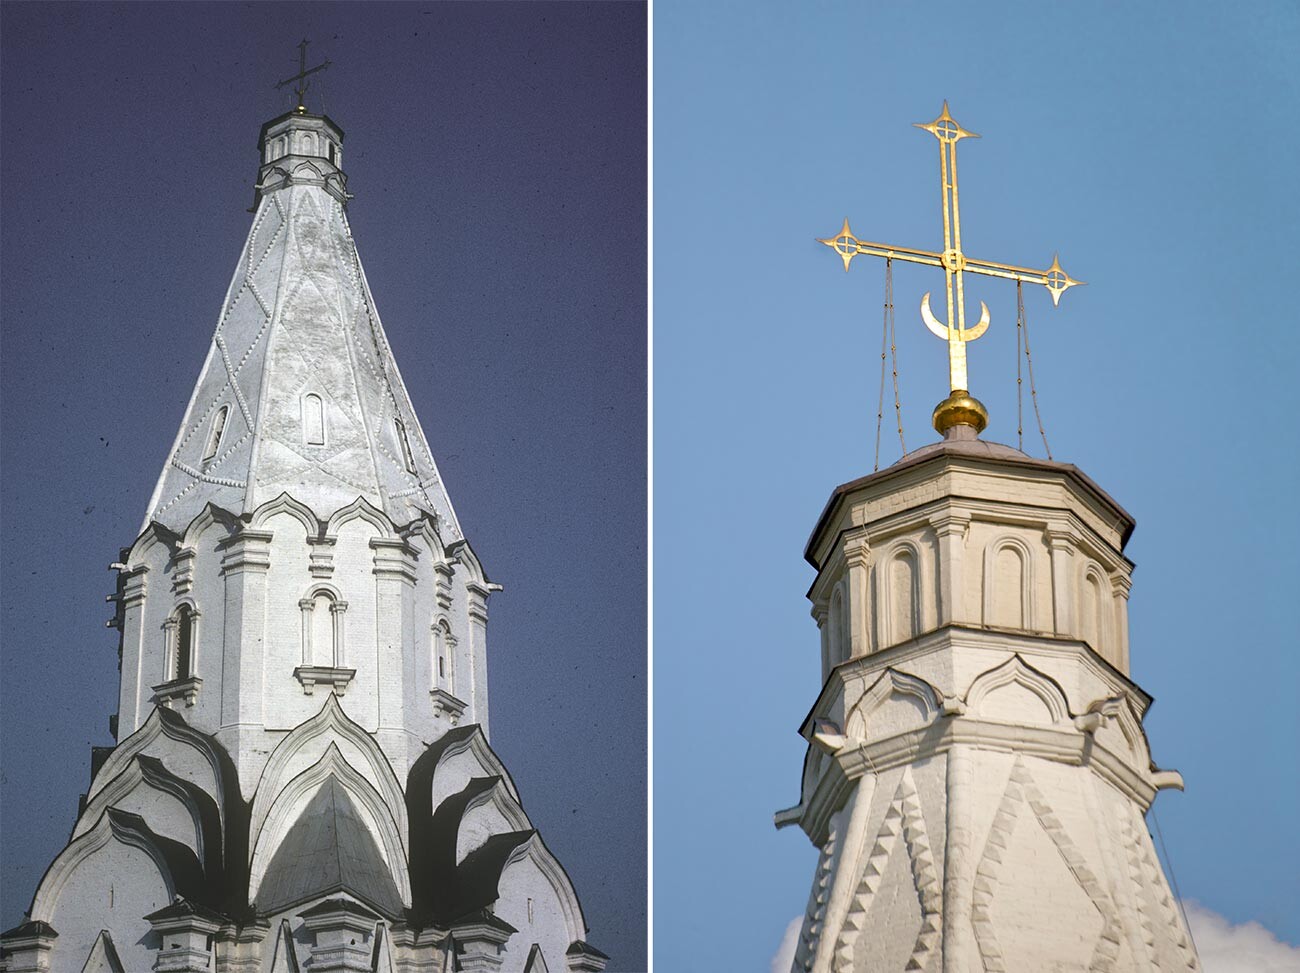 Église de l’Ascension. Structure de la tour, vue sud-ouest. 29 mars 1980 / Église de l’Ascension. Sommet de la tour avec lanterne et croix, vue ouest. 8 juin 2014
